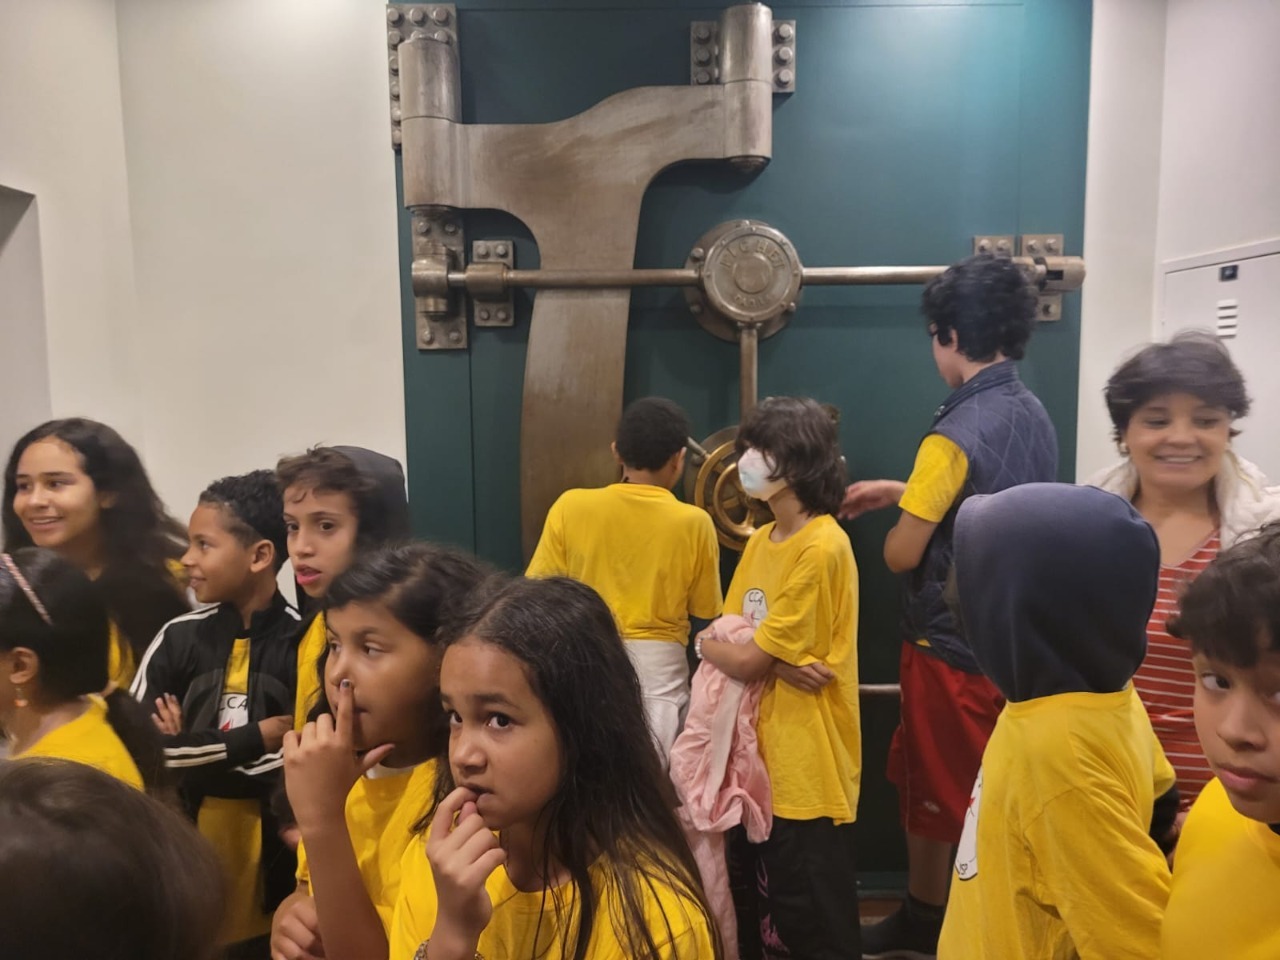 Crianças vestindo camisas amarelas estão na frente da porta de um Cofre. Ao fundo, duas crianças também de camisetas amarelas interagem com a porta do cofre.